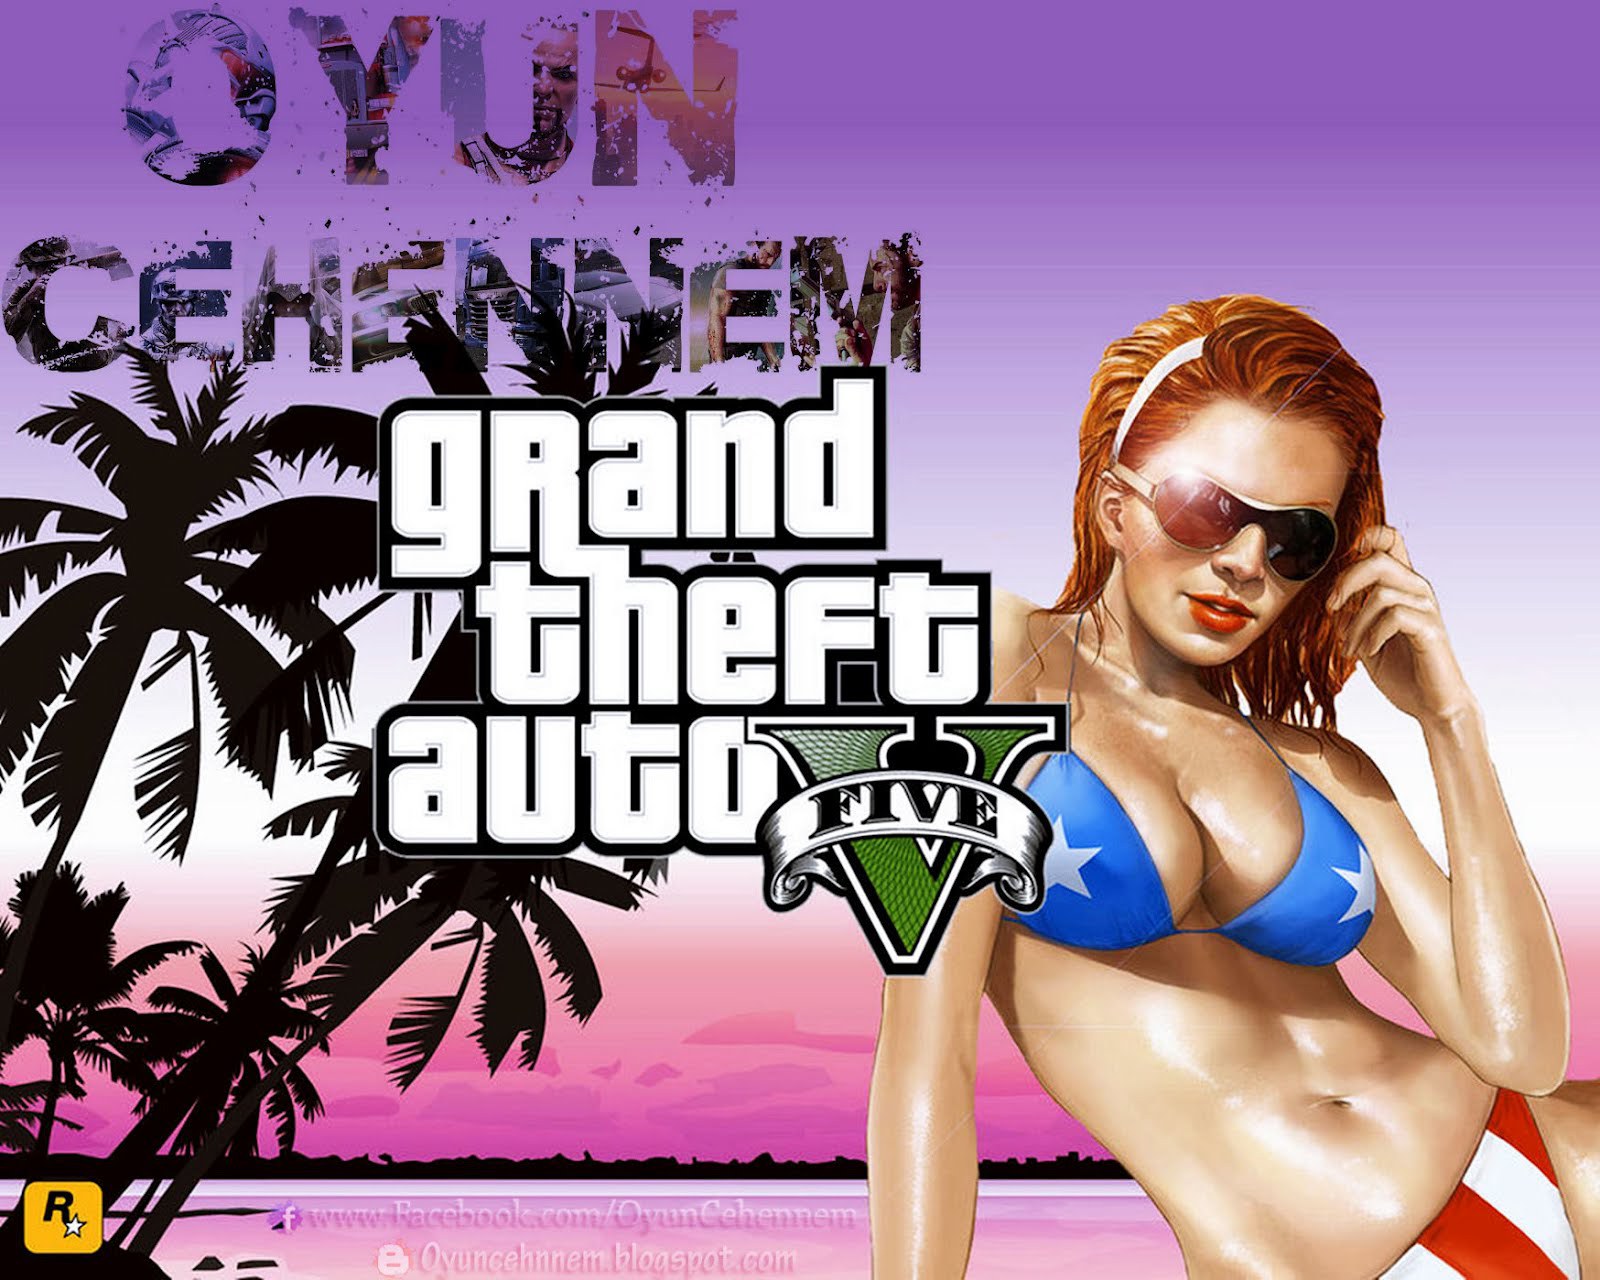 Zastaki.com - Grand Theft Auto V американская девушка